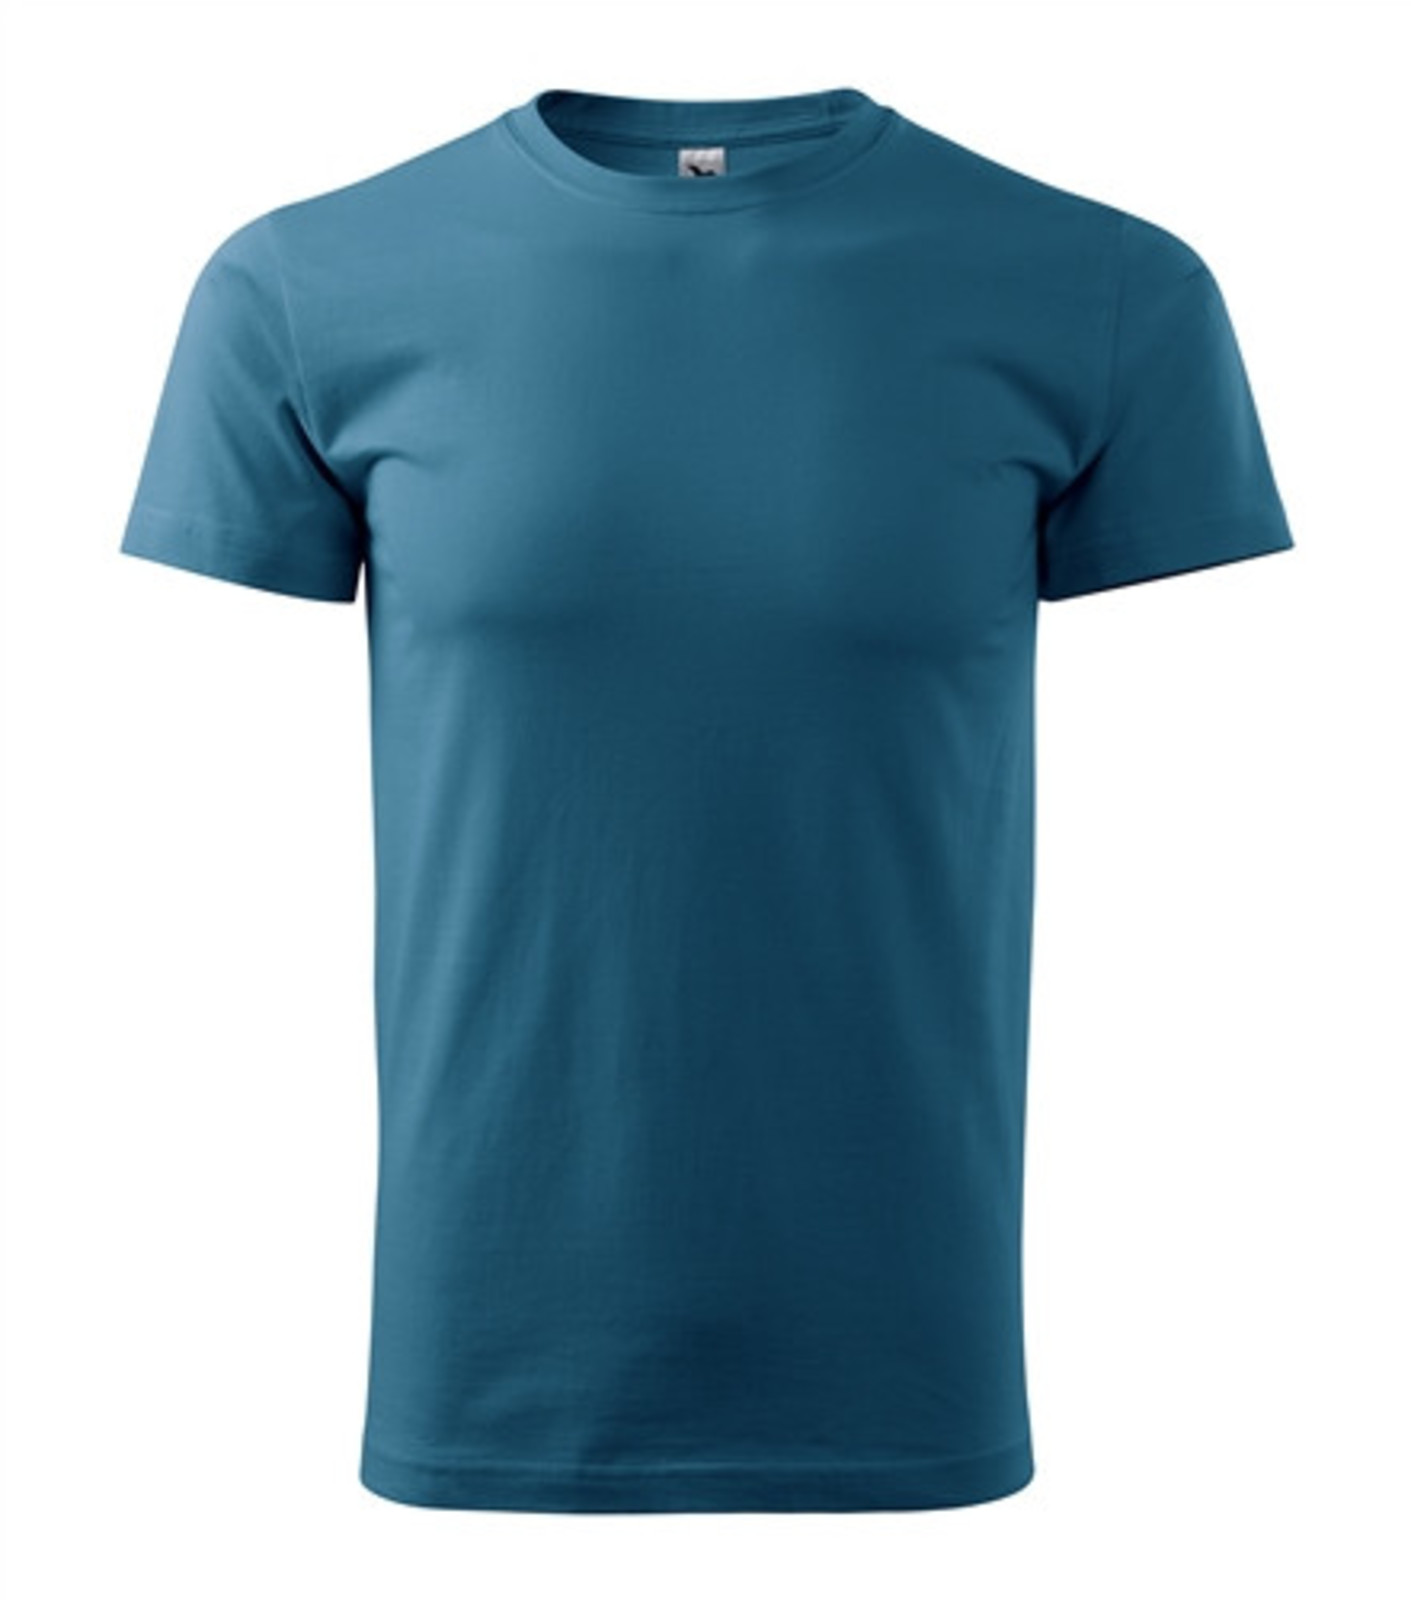 Unisex tričko Malfini Heavy New 137 - veľkosť: S, farba: petrolejová modrá